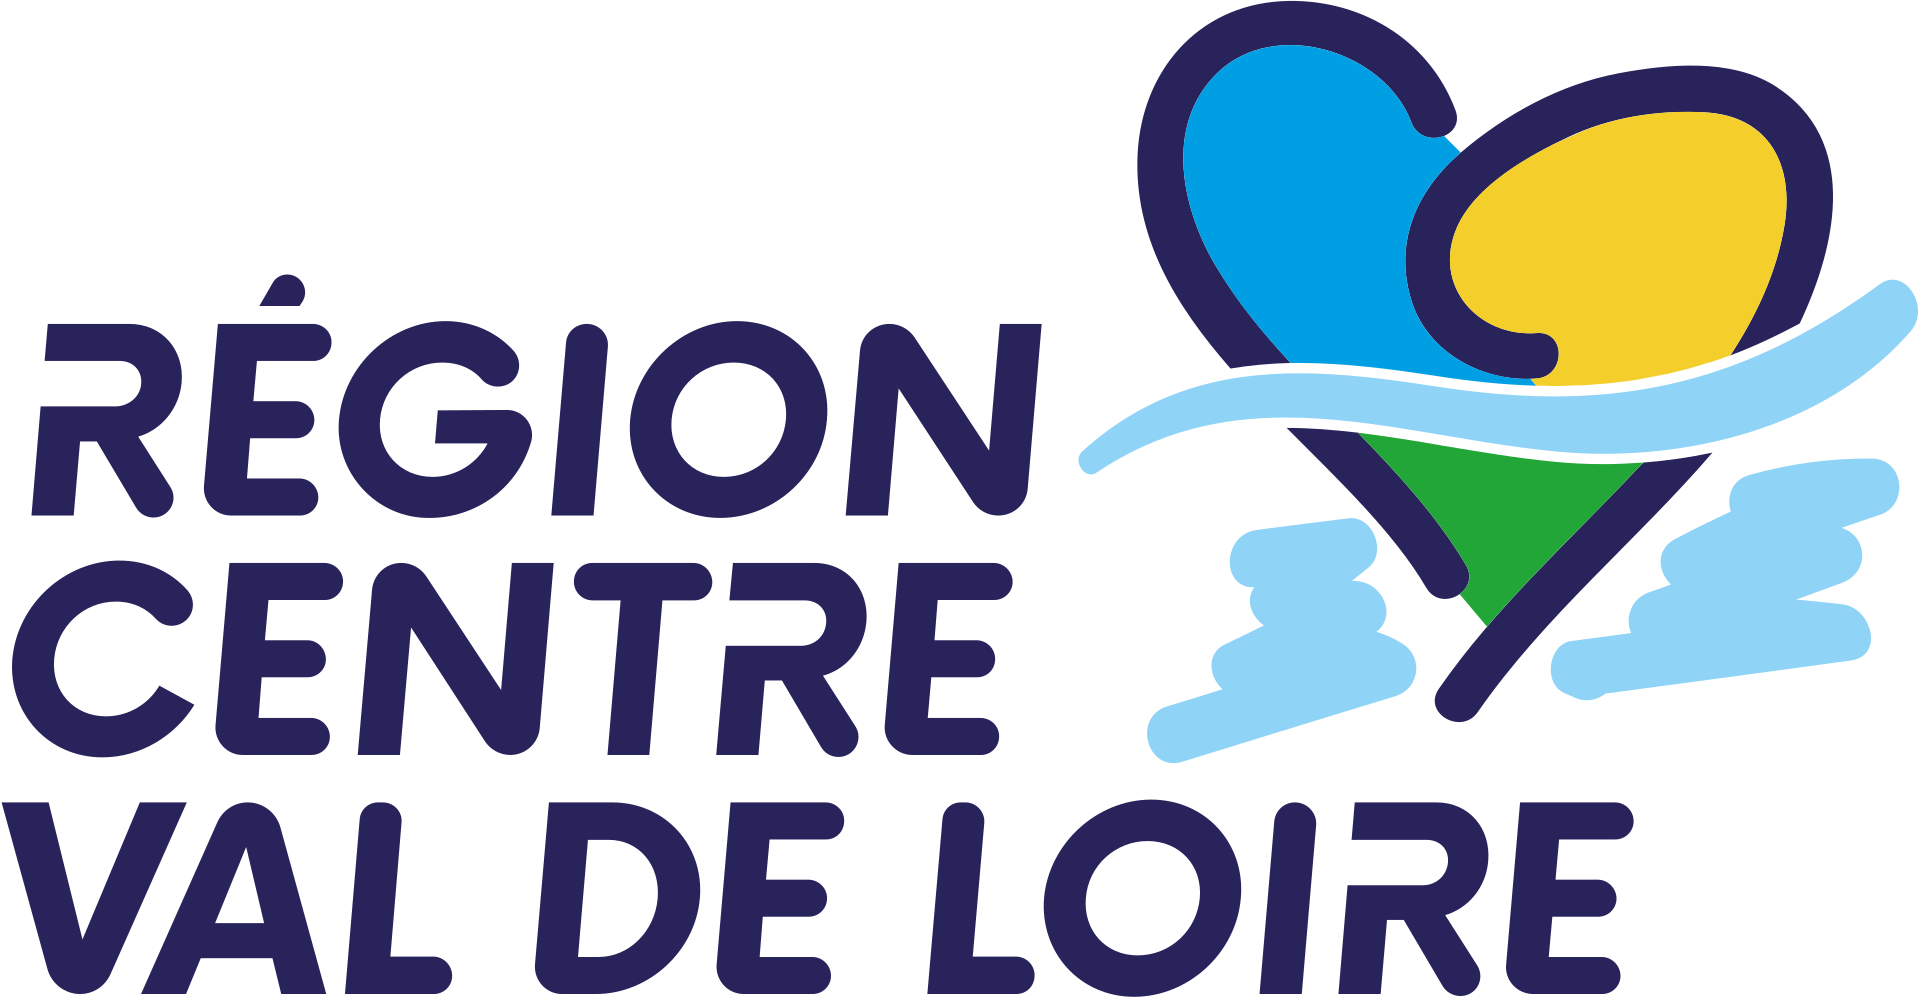 Logo Région Centre Val de Loire